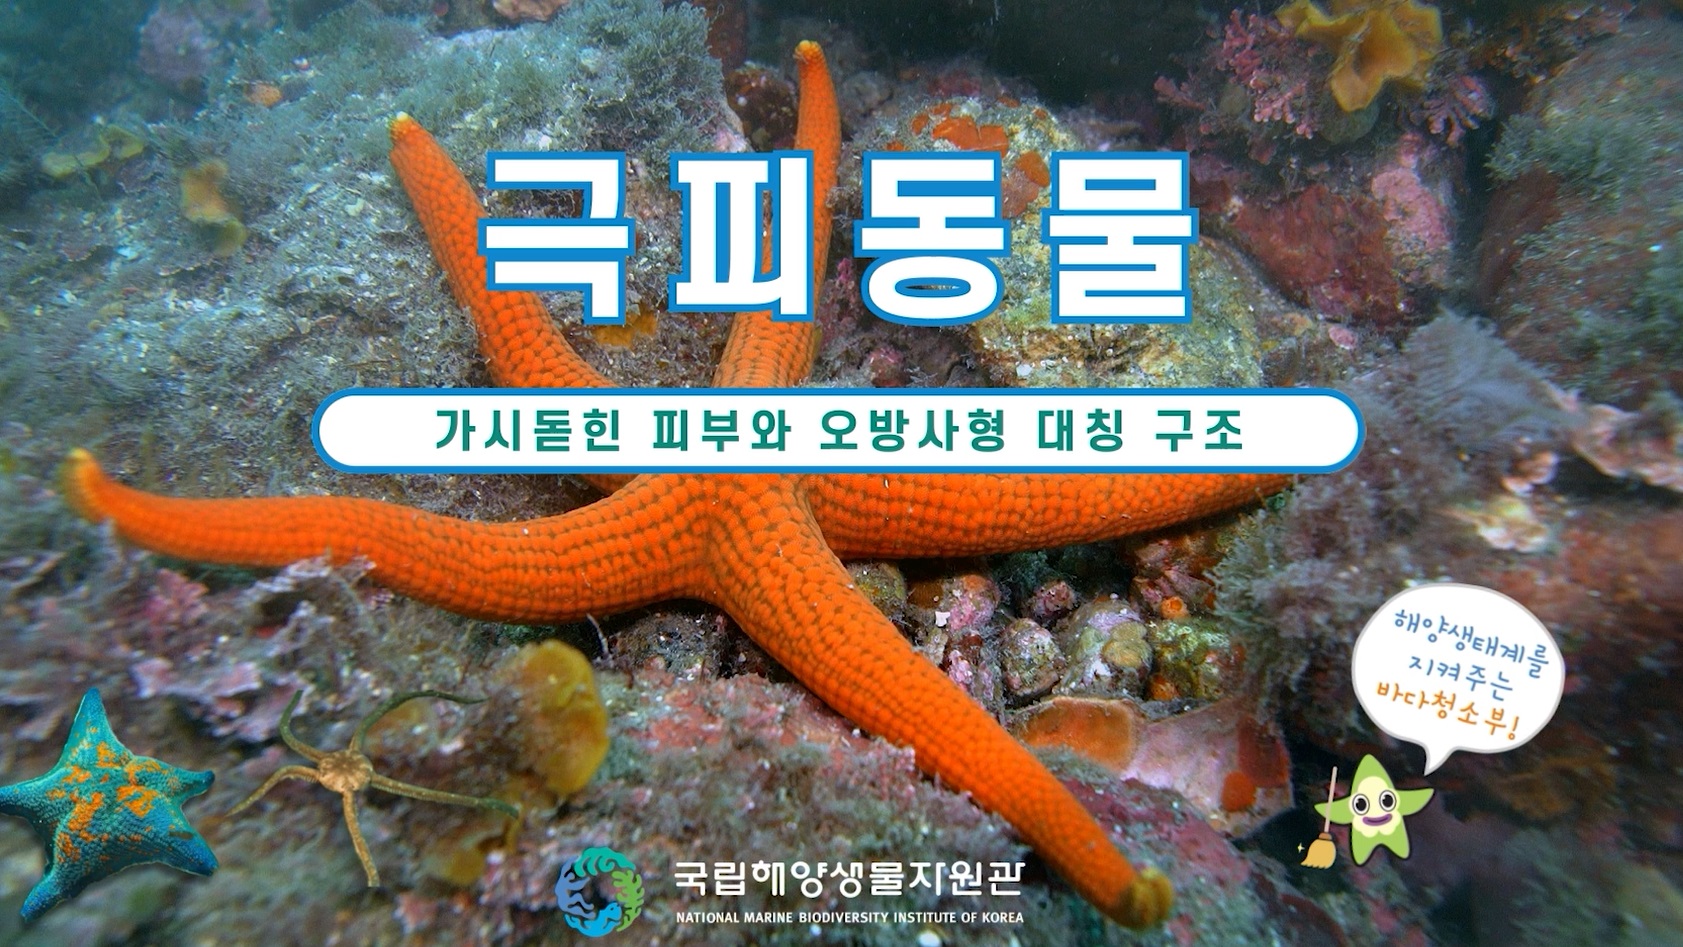 해양극피동물자원기탁등록보존기관 홍보영상